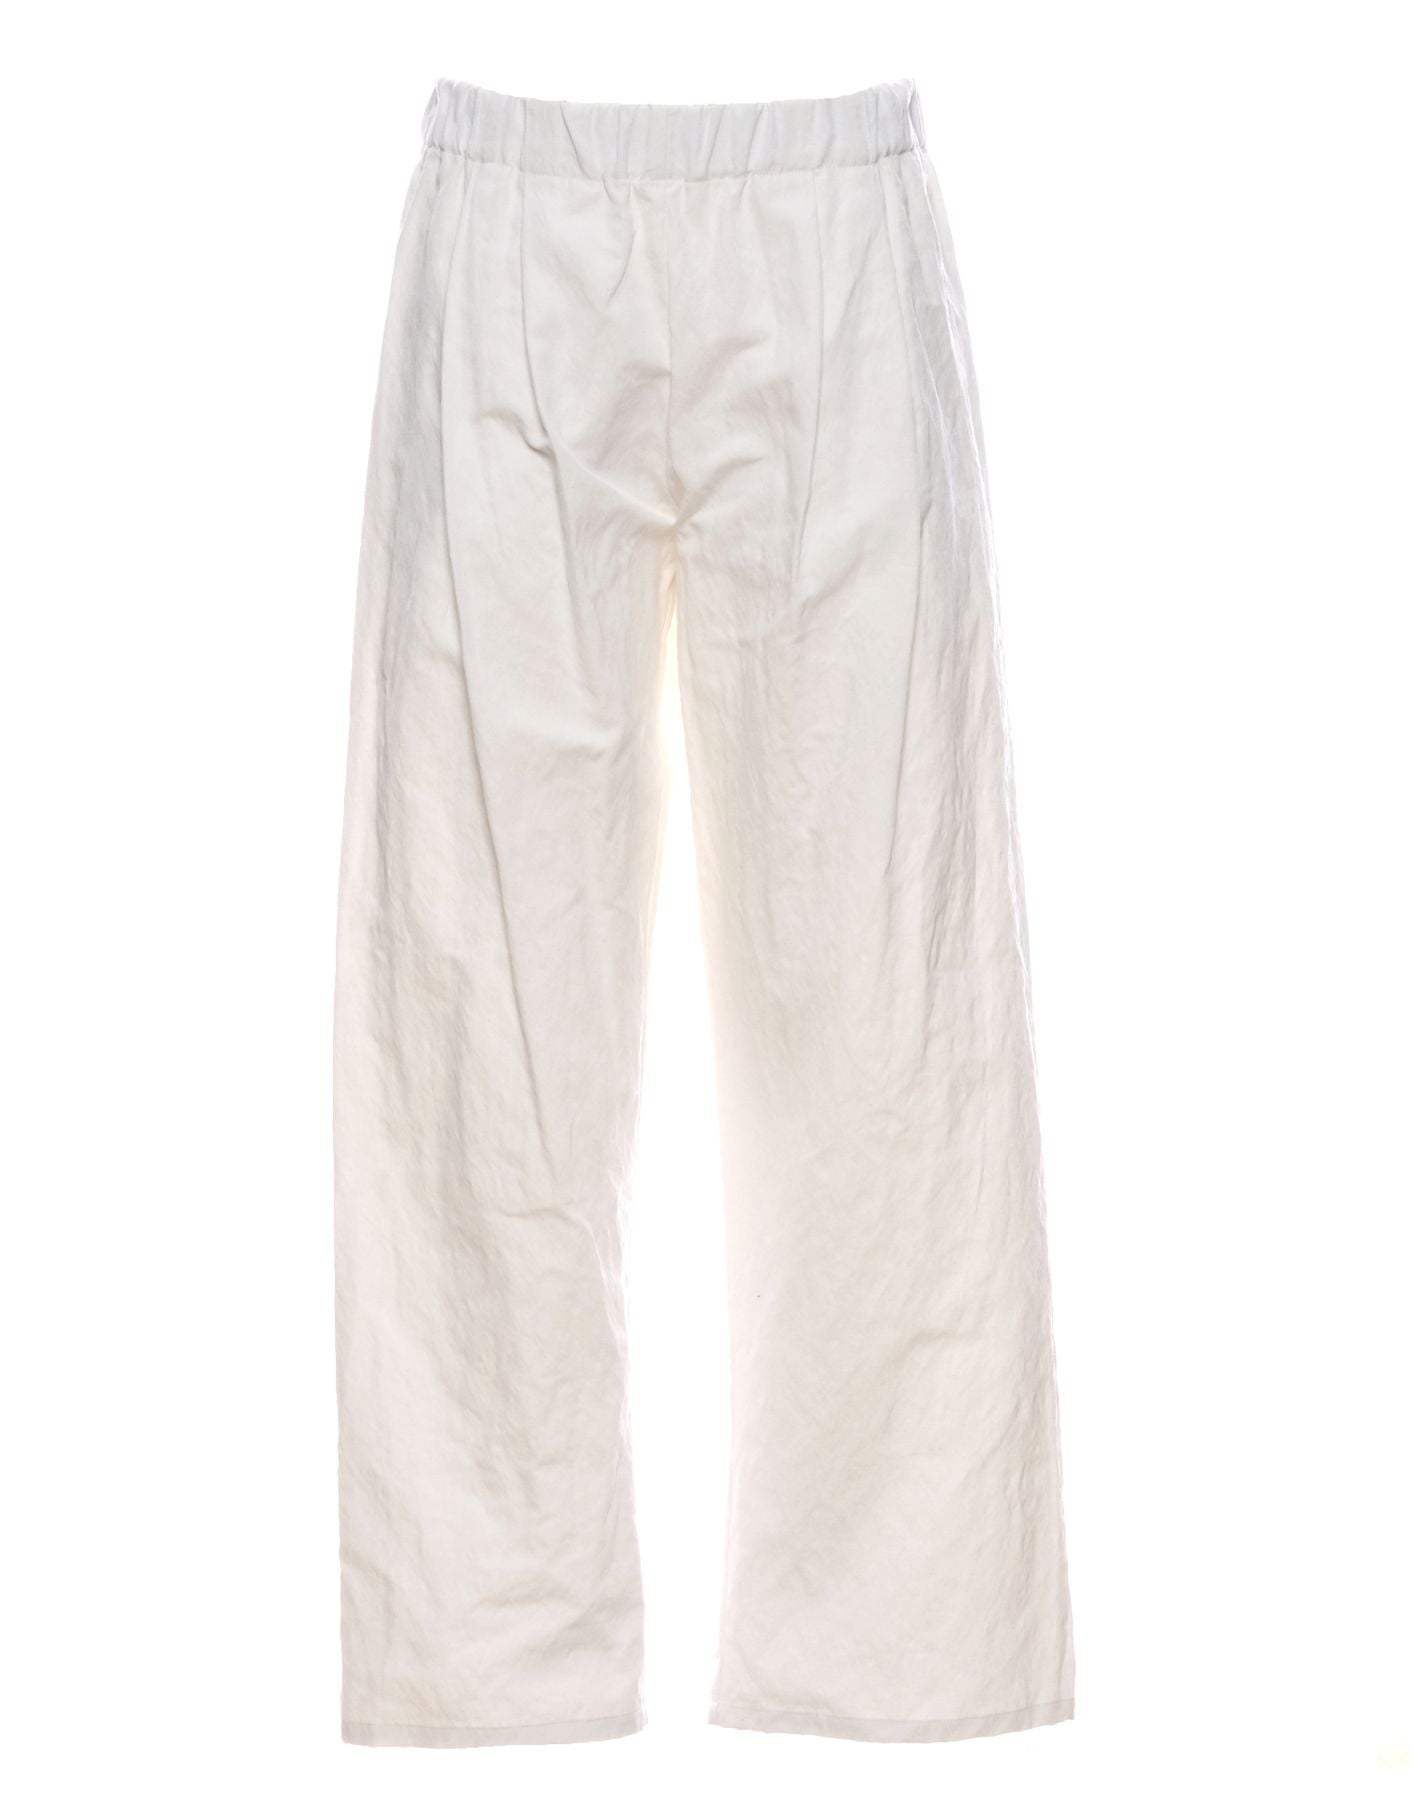 Pants for woman P1382 TS682 BIANCO A.B APUNTOB